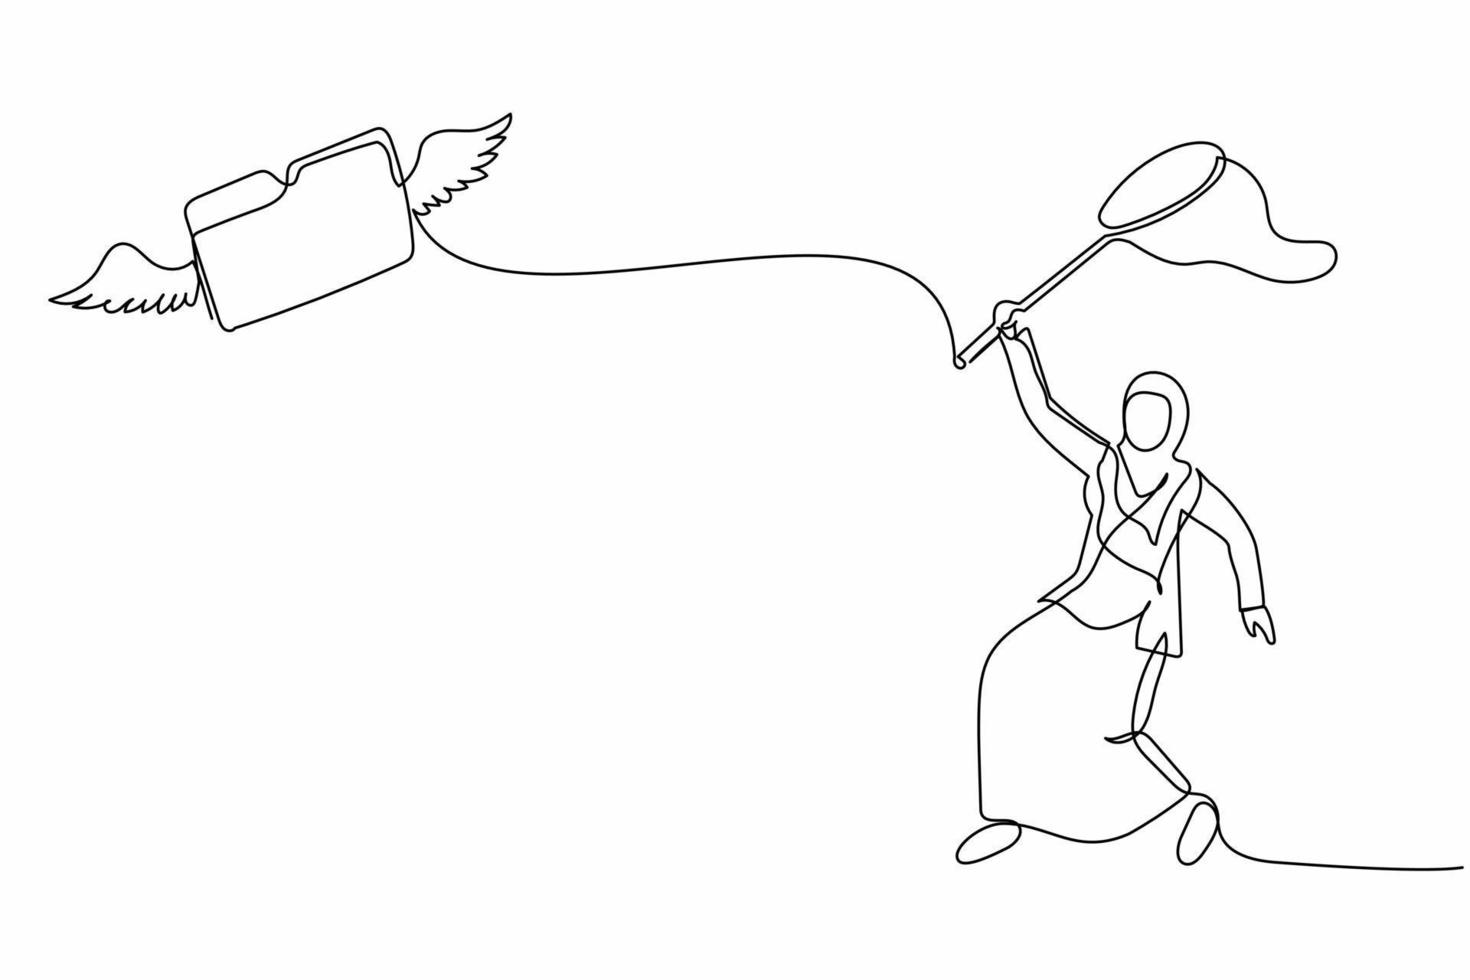 empresária árabe de desenho de linha contínua tenta pegar pasta voadora com rede de borboletas. arquivo de arquivo ausente de documento secreto ou importante. ilustração gráfica de vetor de design de linha única